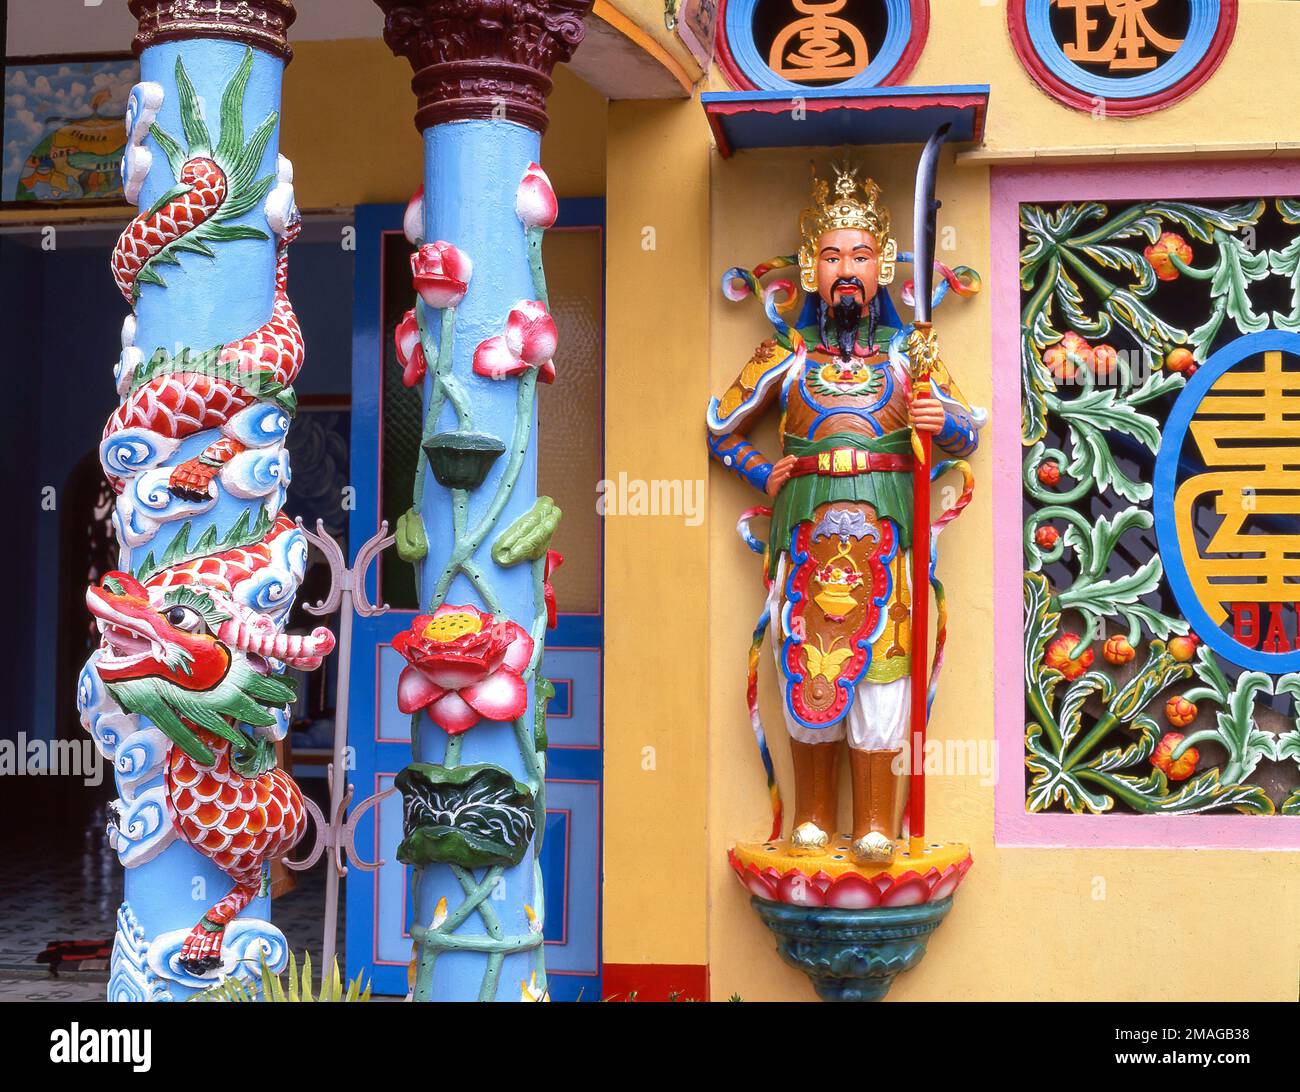 Colonnes colorées et statue, Tan an Thanh That Pagoda, delta du Mékong, sud du Vietnam, République socialiste du Vietnam Banque D'Images